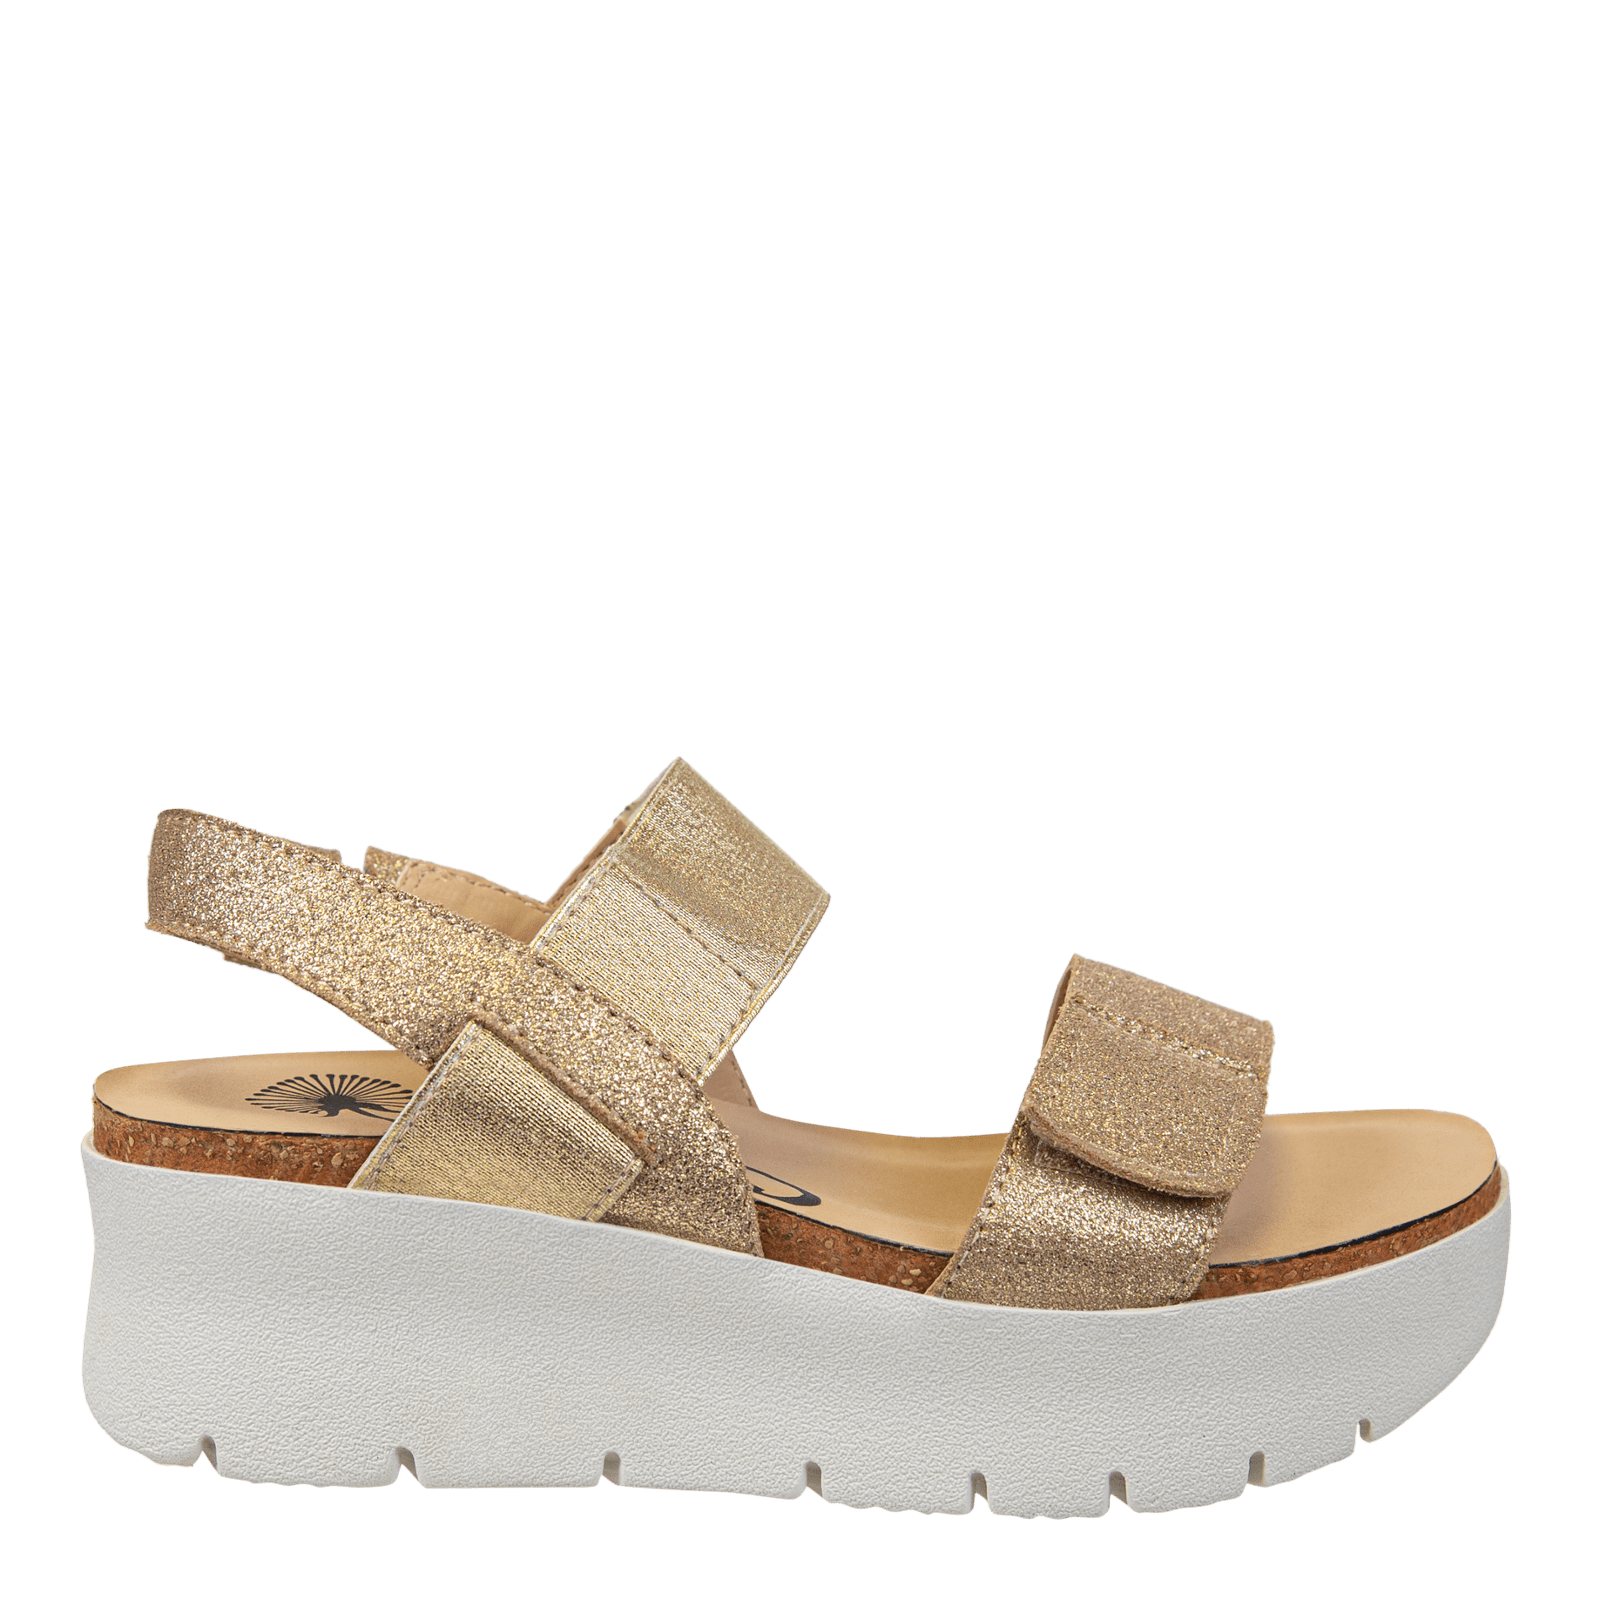 NOVA in GOLD Platform Sandals